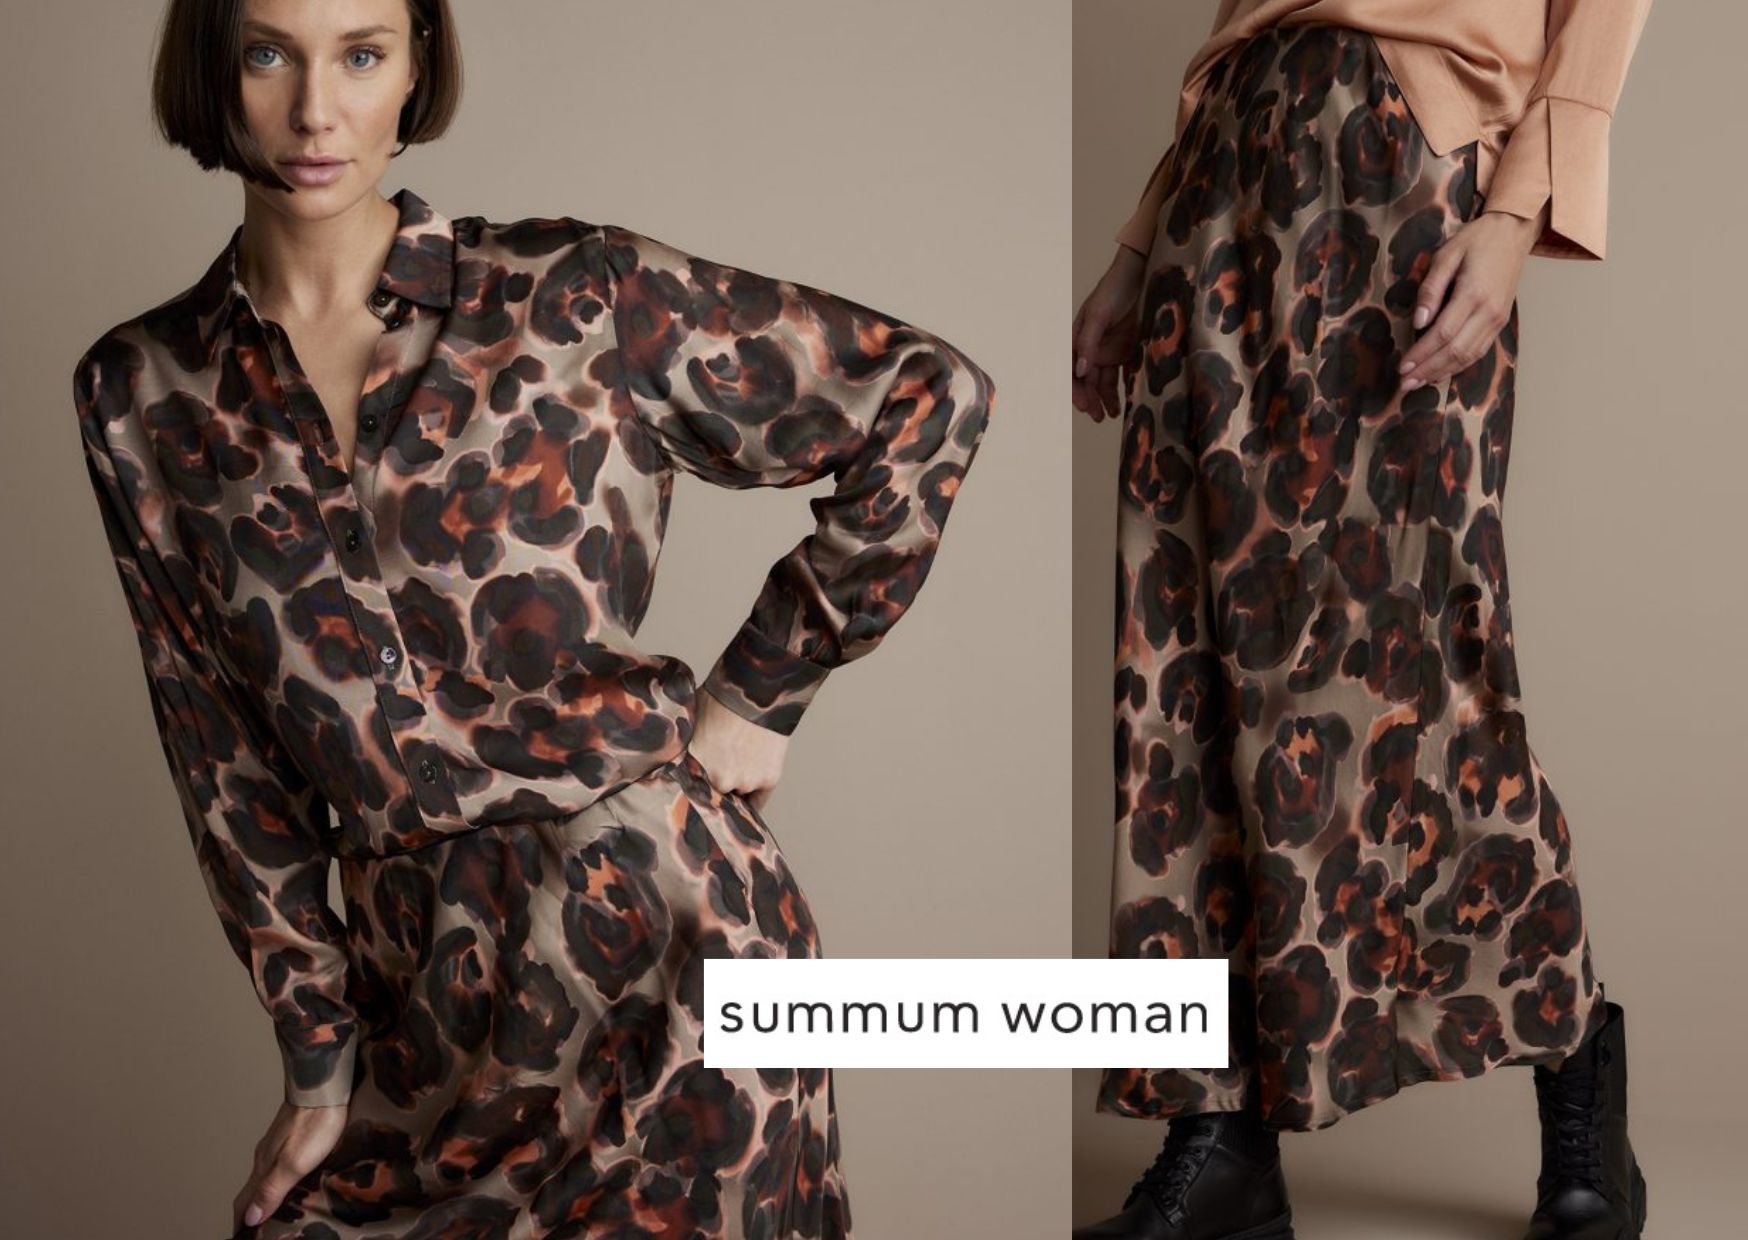 Nieuwe collectie Summum Woman bij De Peperkorrel